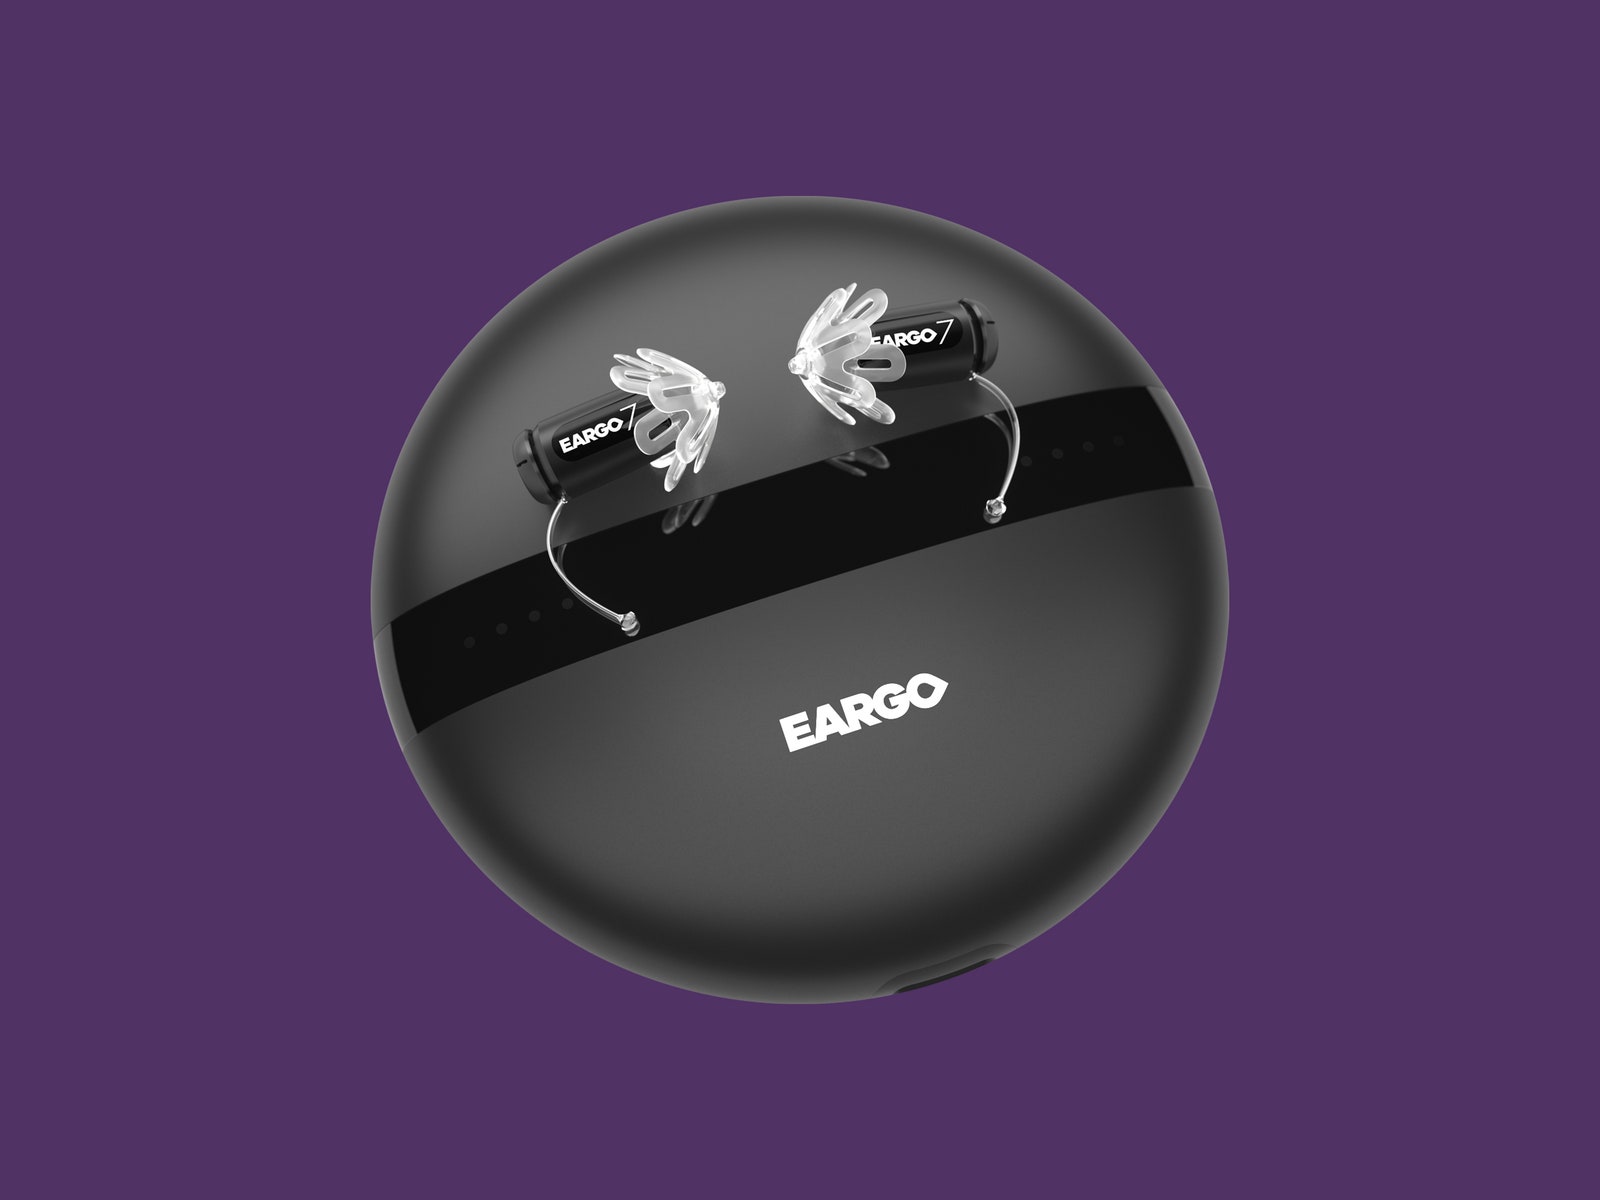 Слуховые аппараты Eargo 7 на подставке для зарядки